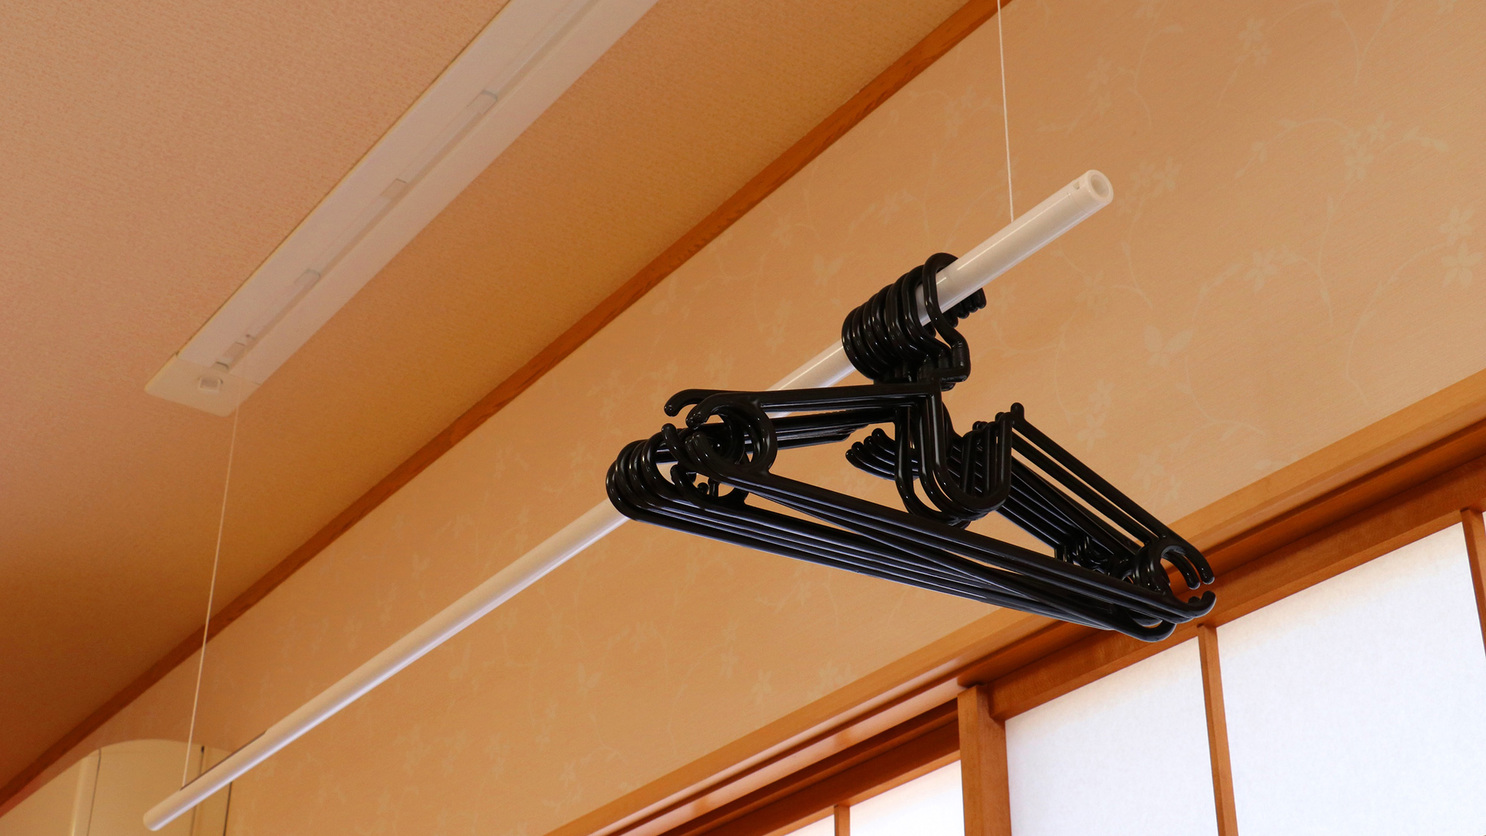 ビジネス・連泊・合宿に嬉しい、天井吊り下げ式のハンガーラック